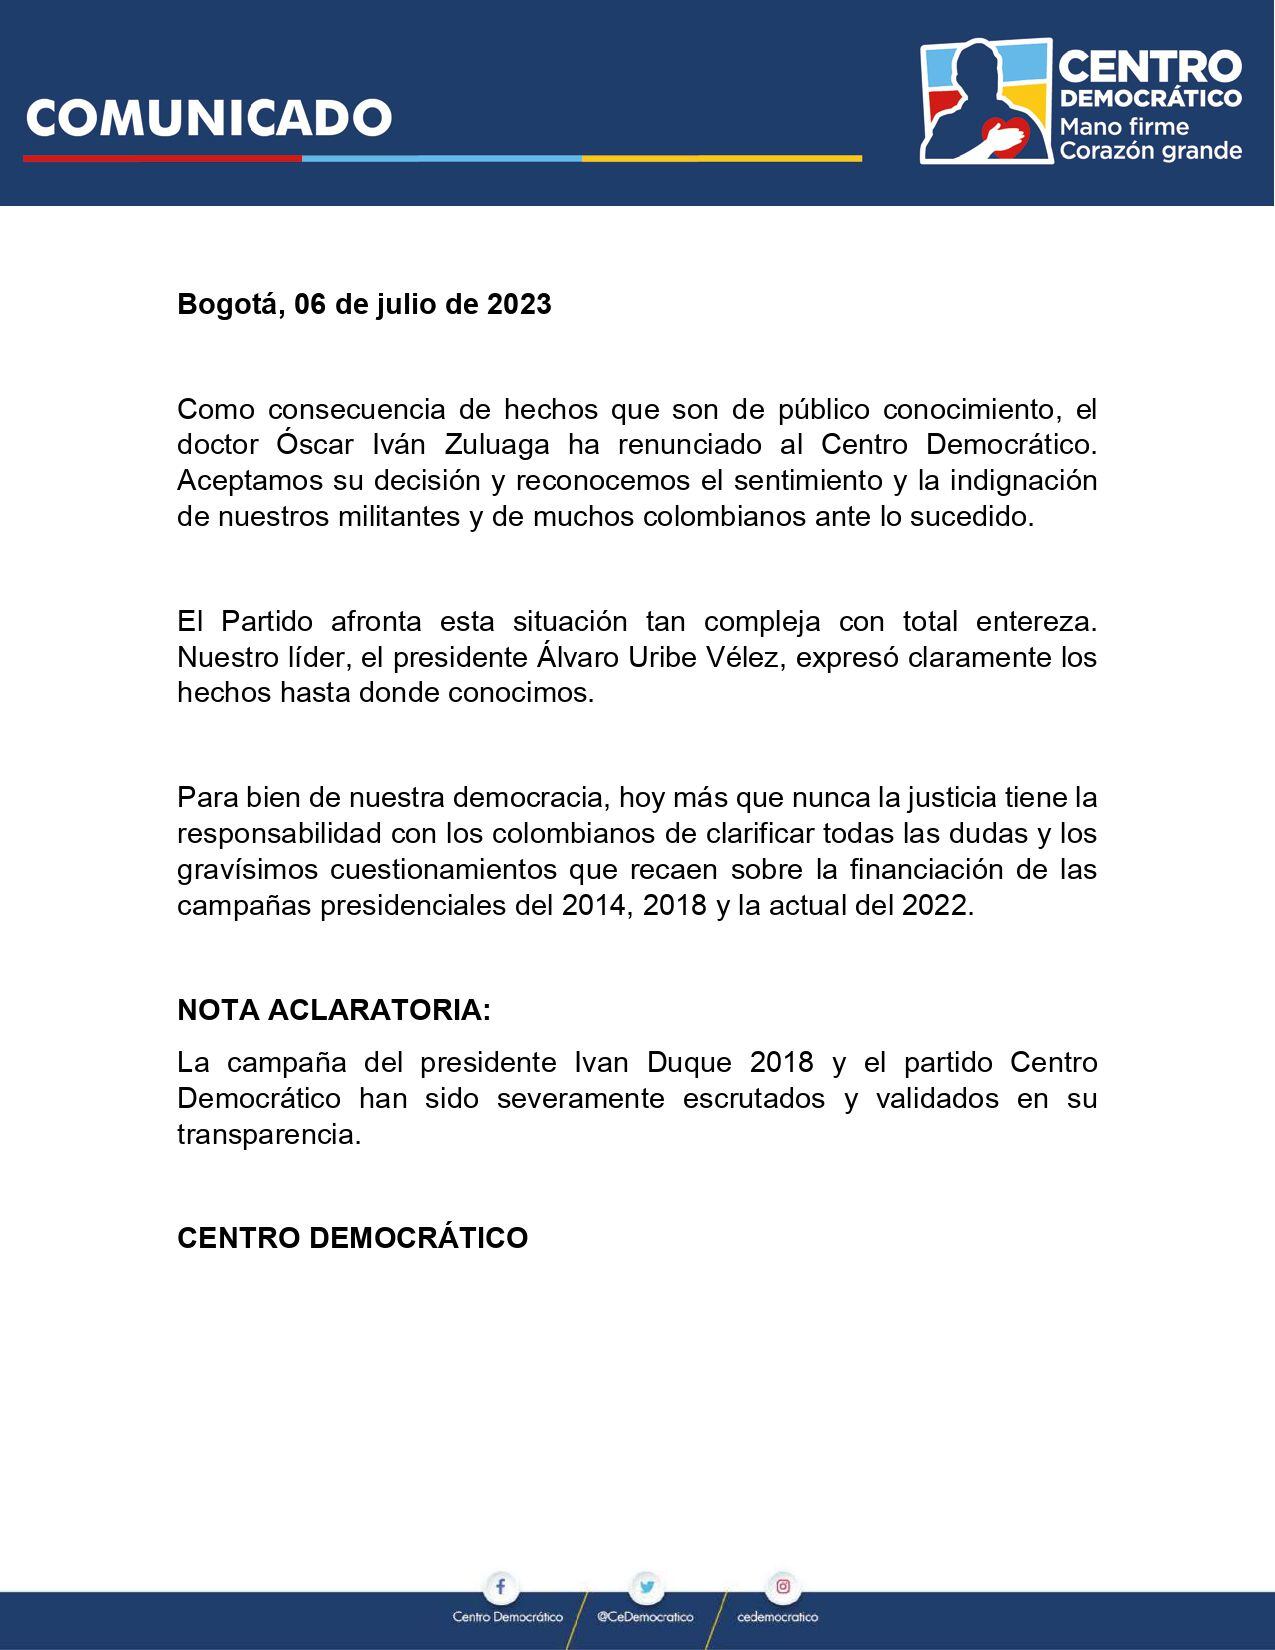 El comunicado donde el Centro Democrático acepta la renuncia de Óscar Iván Zuluaga.